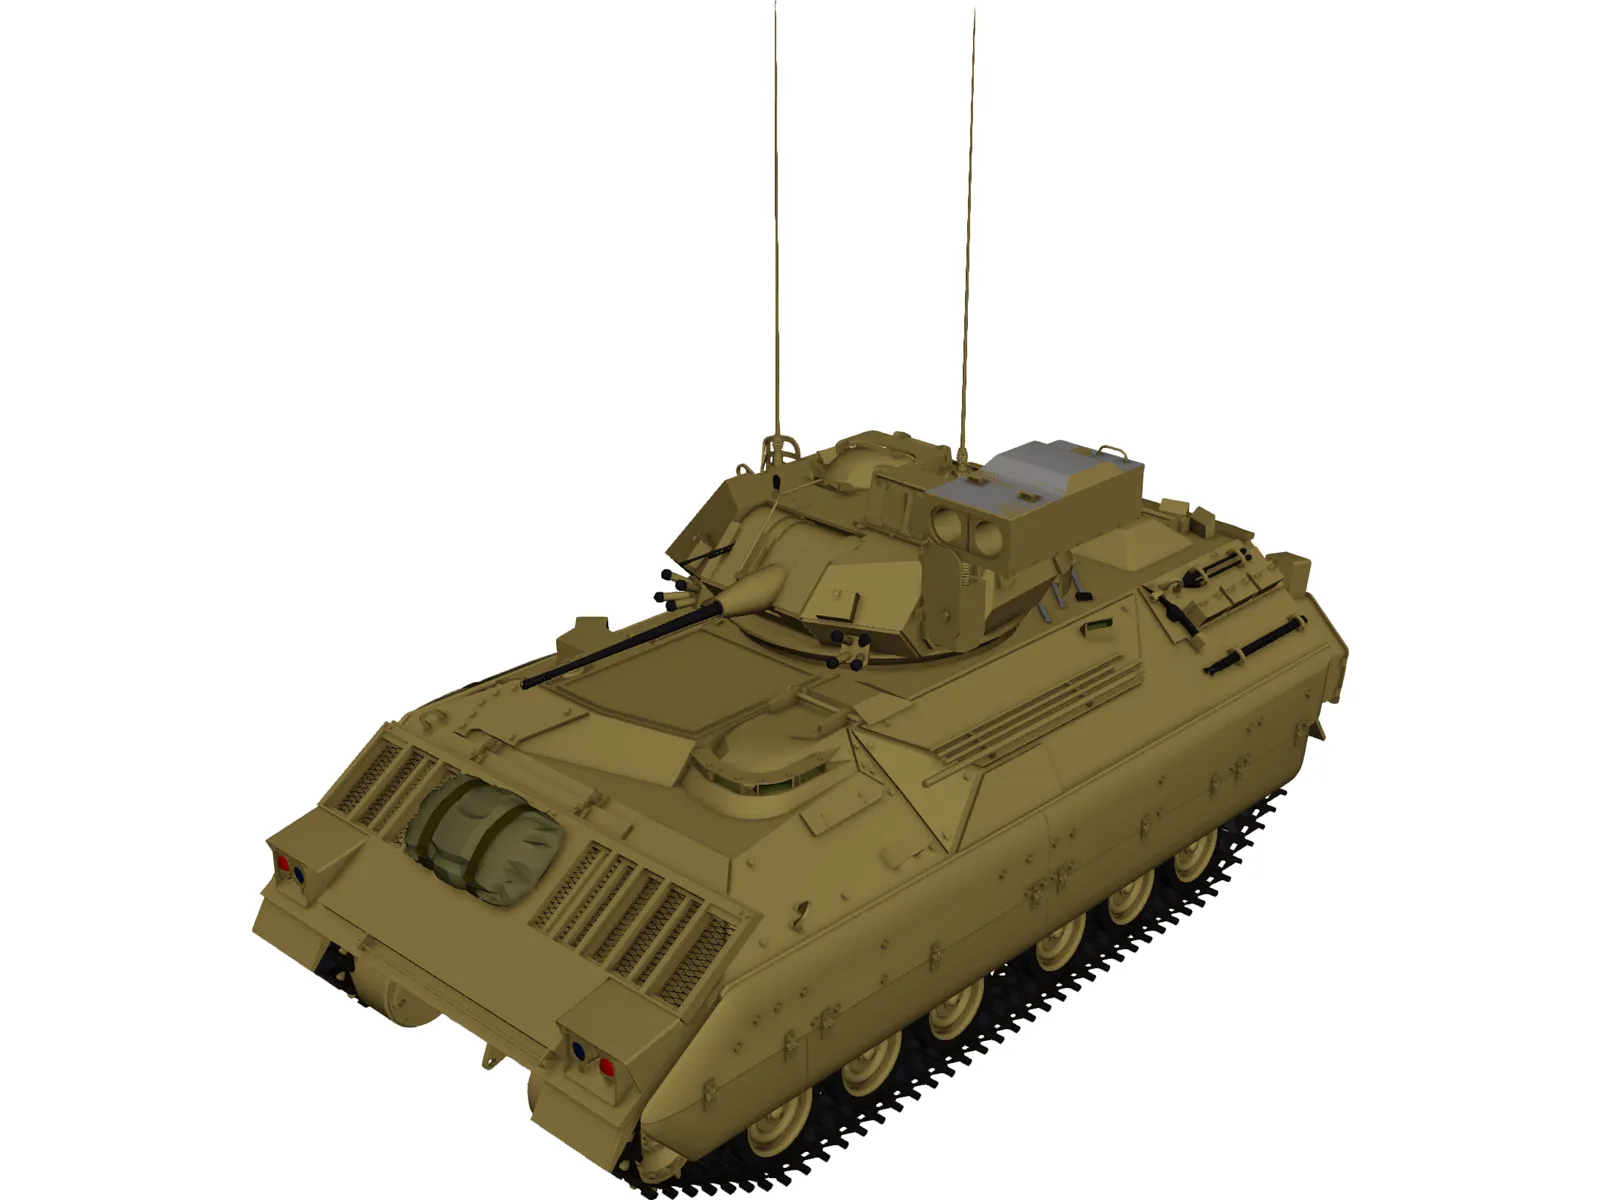 M2AB Infantry 3D Model